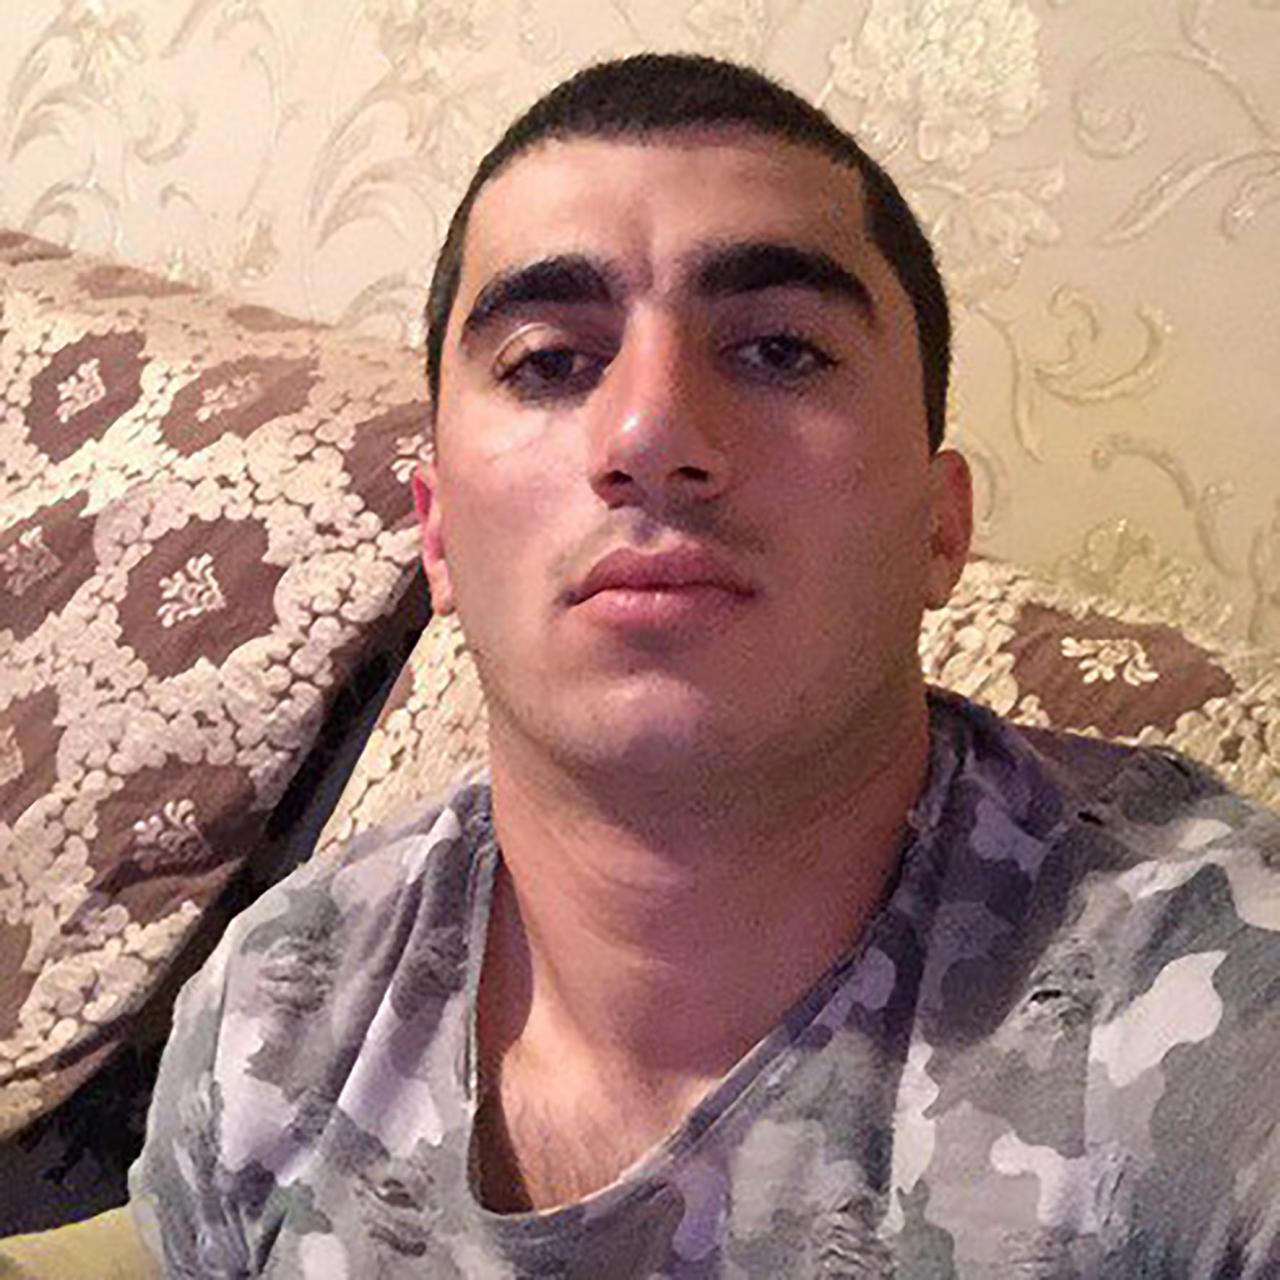 Un soldado GRU Spetsnaz, Shamil Aselderov, según los informes, murió en Ucrania